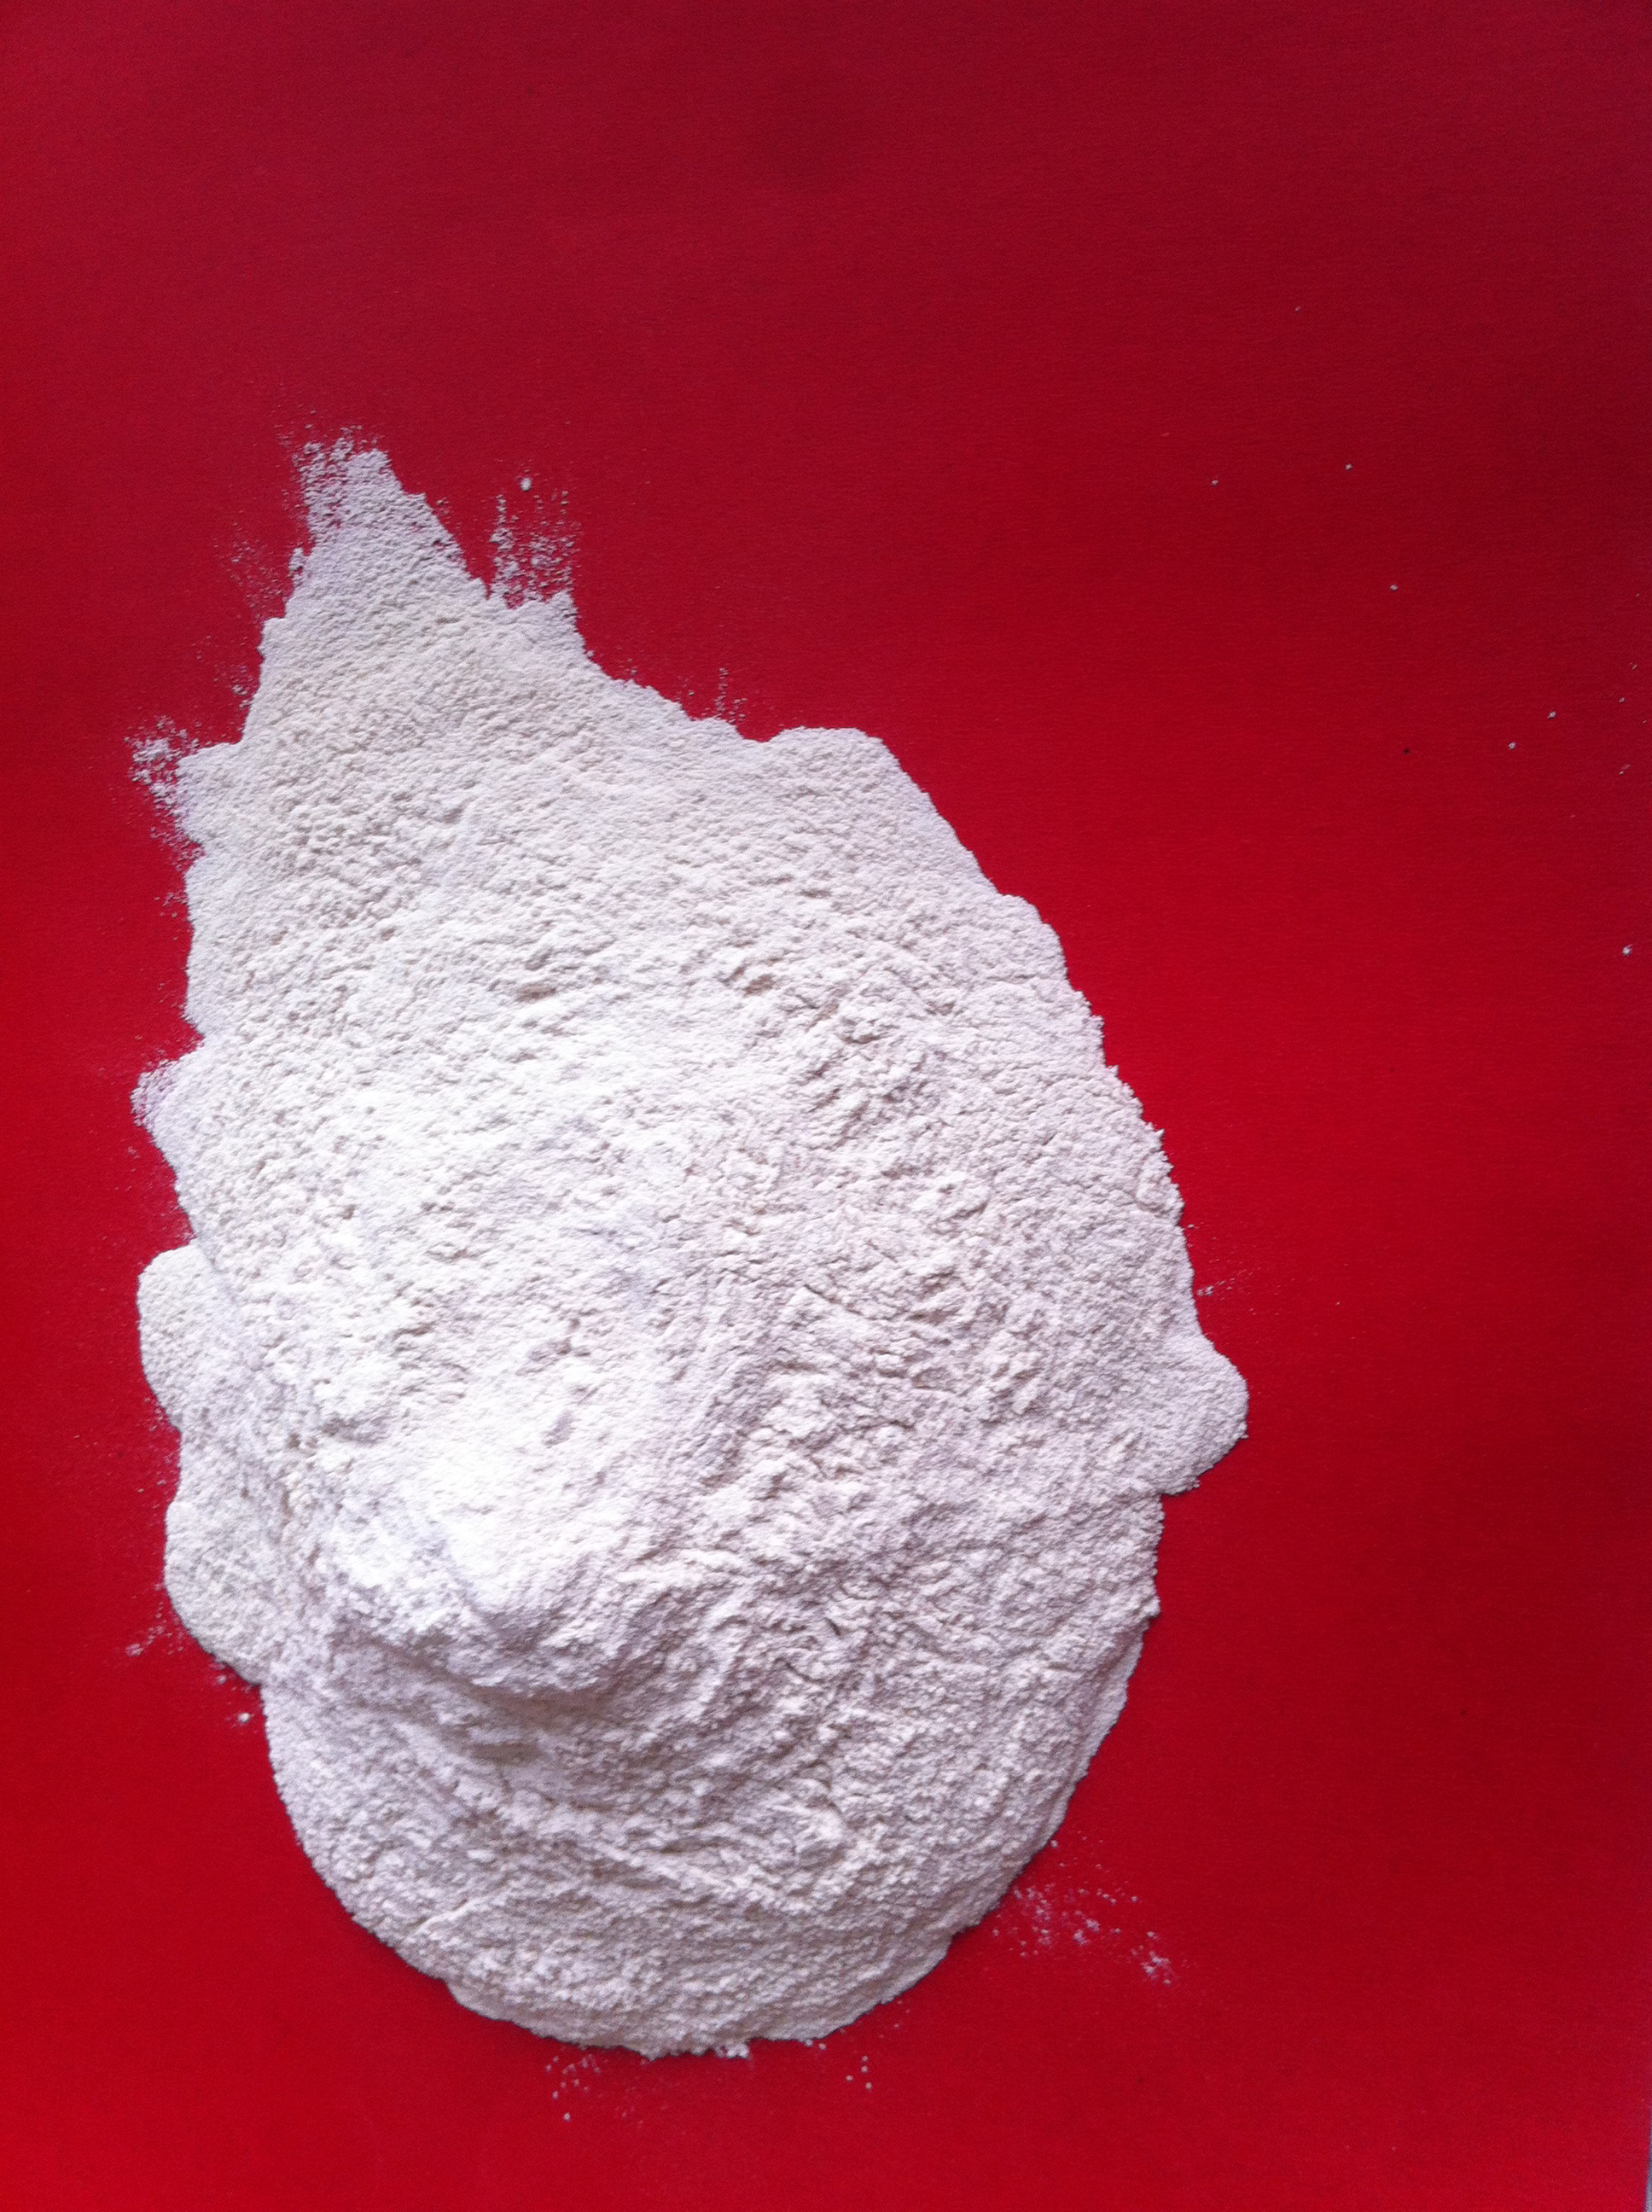 Anti-Salt bentonite